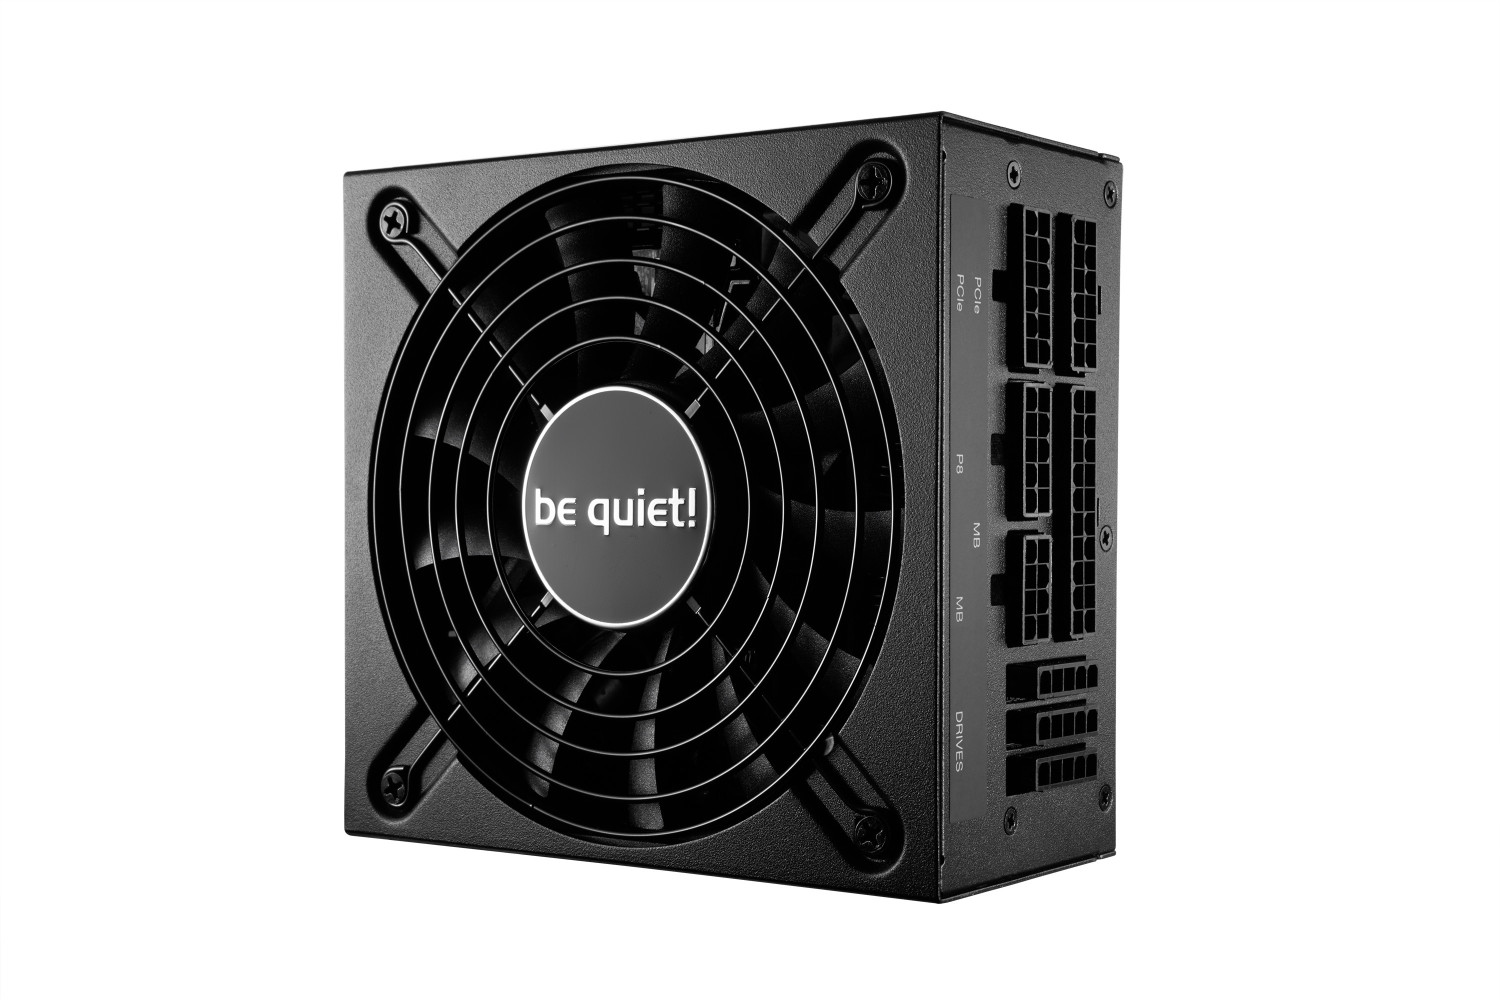 be quiet! SFX L Power (BN239) 600W au meilleur prix sur